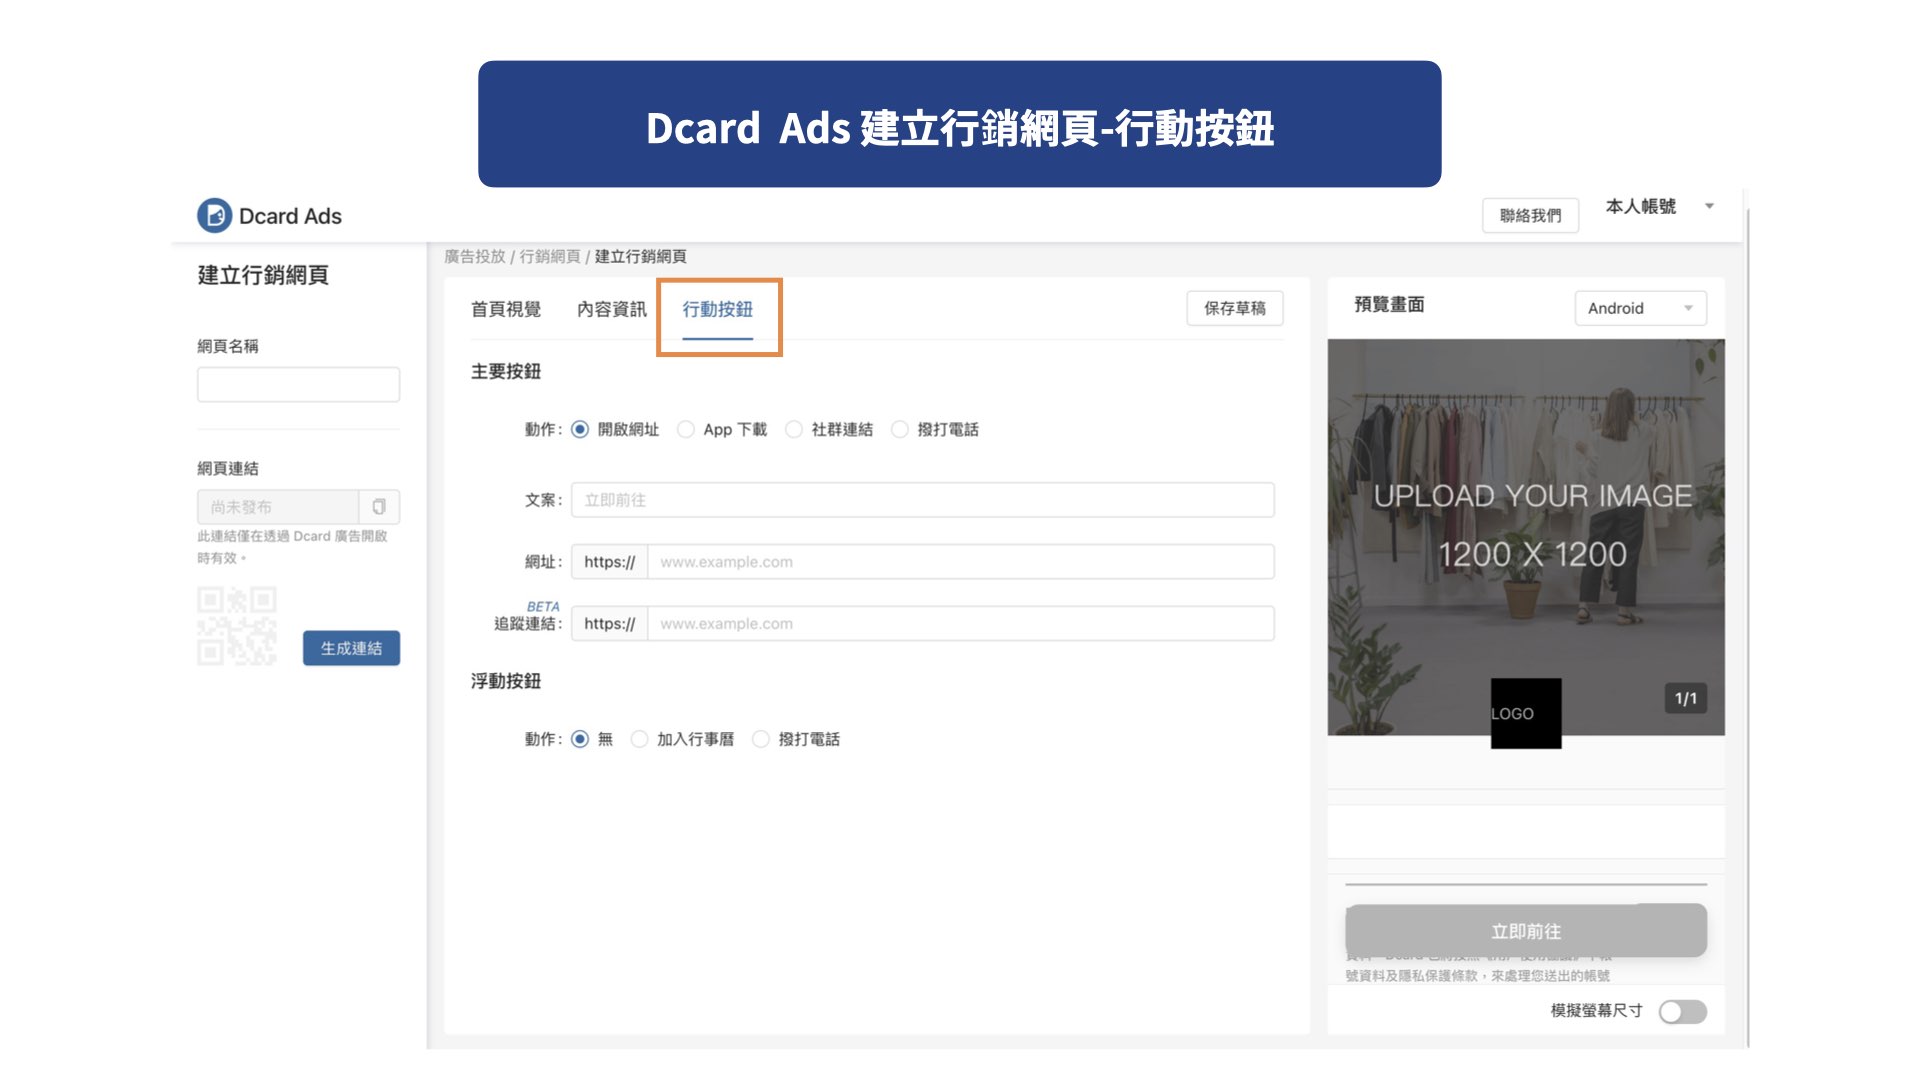 Dcard Ads 建立行銷網頁-行動按鈕